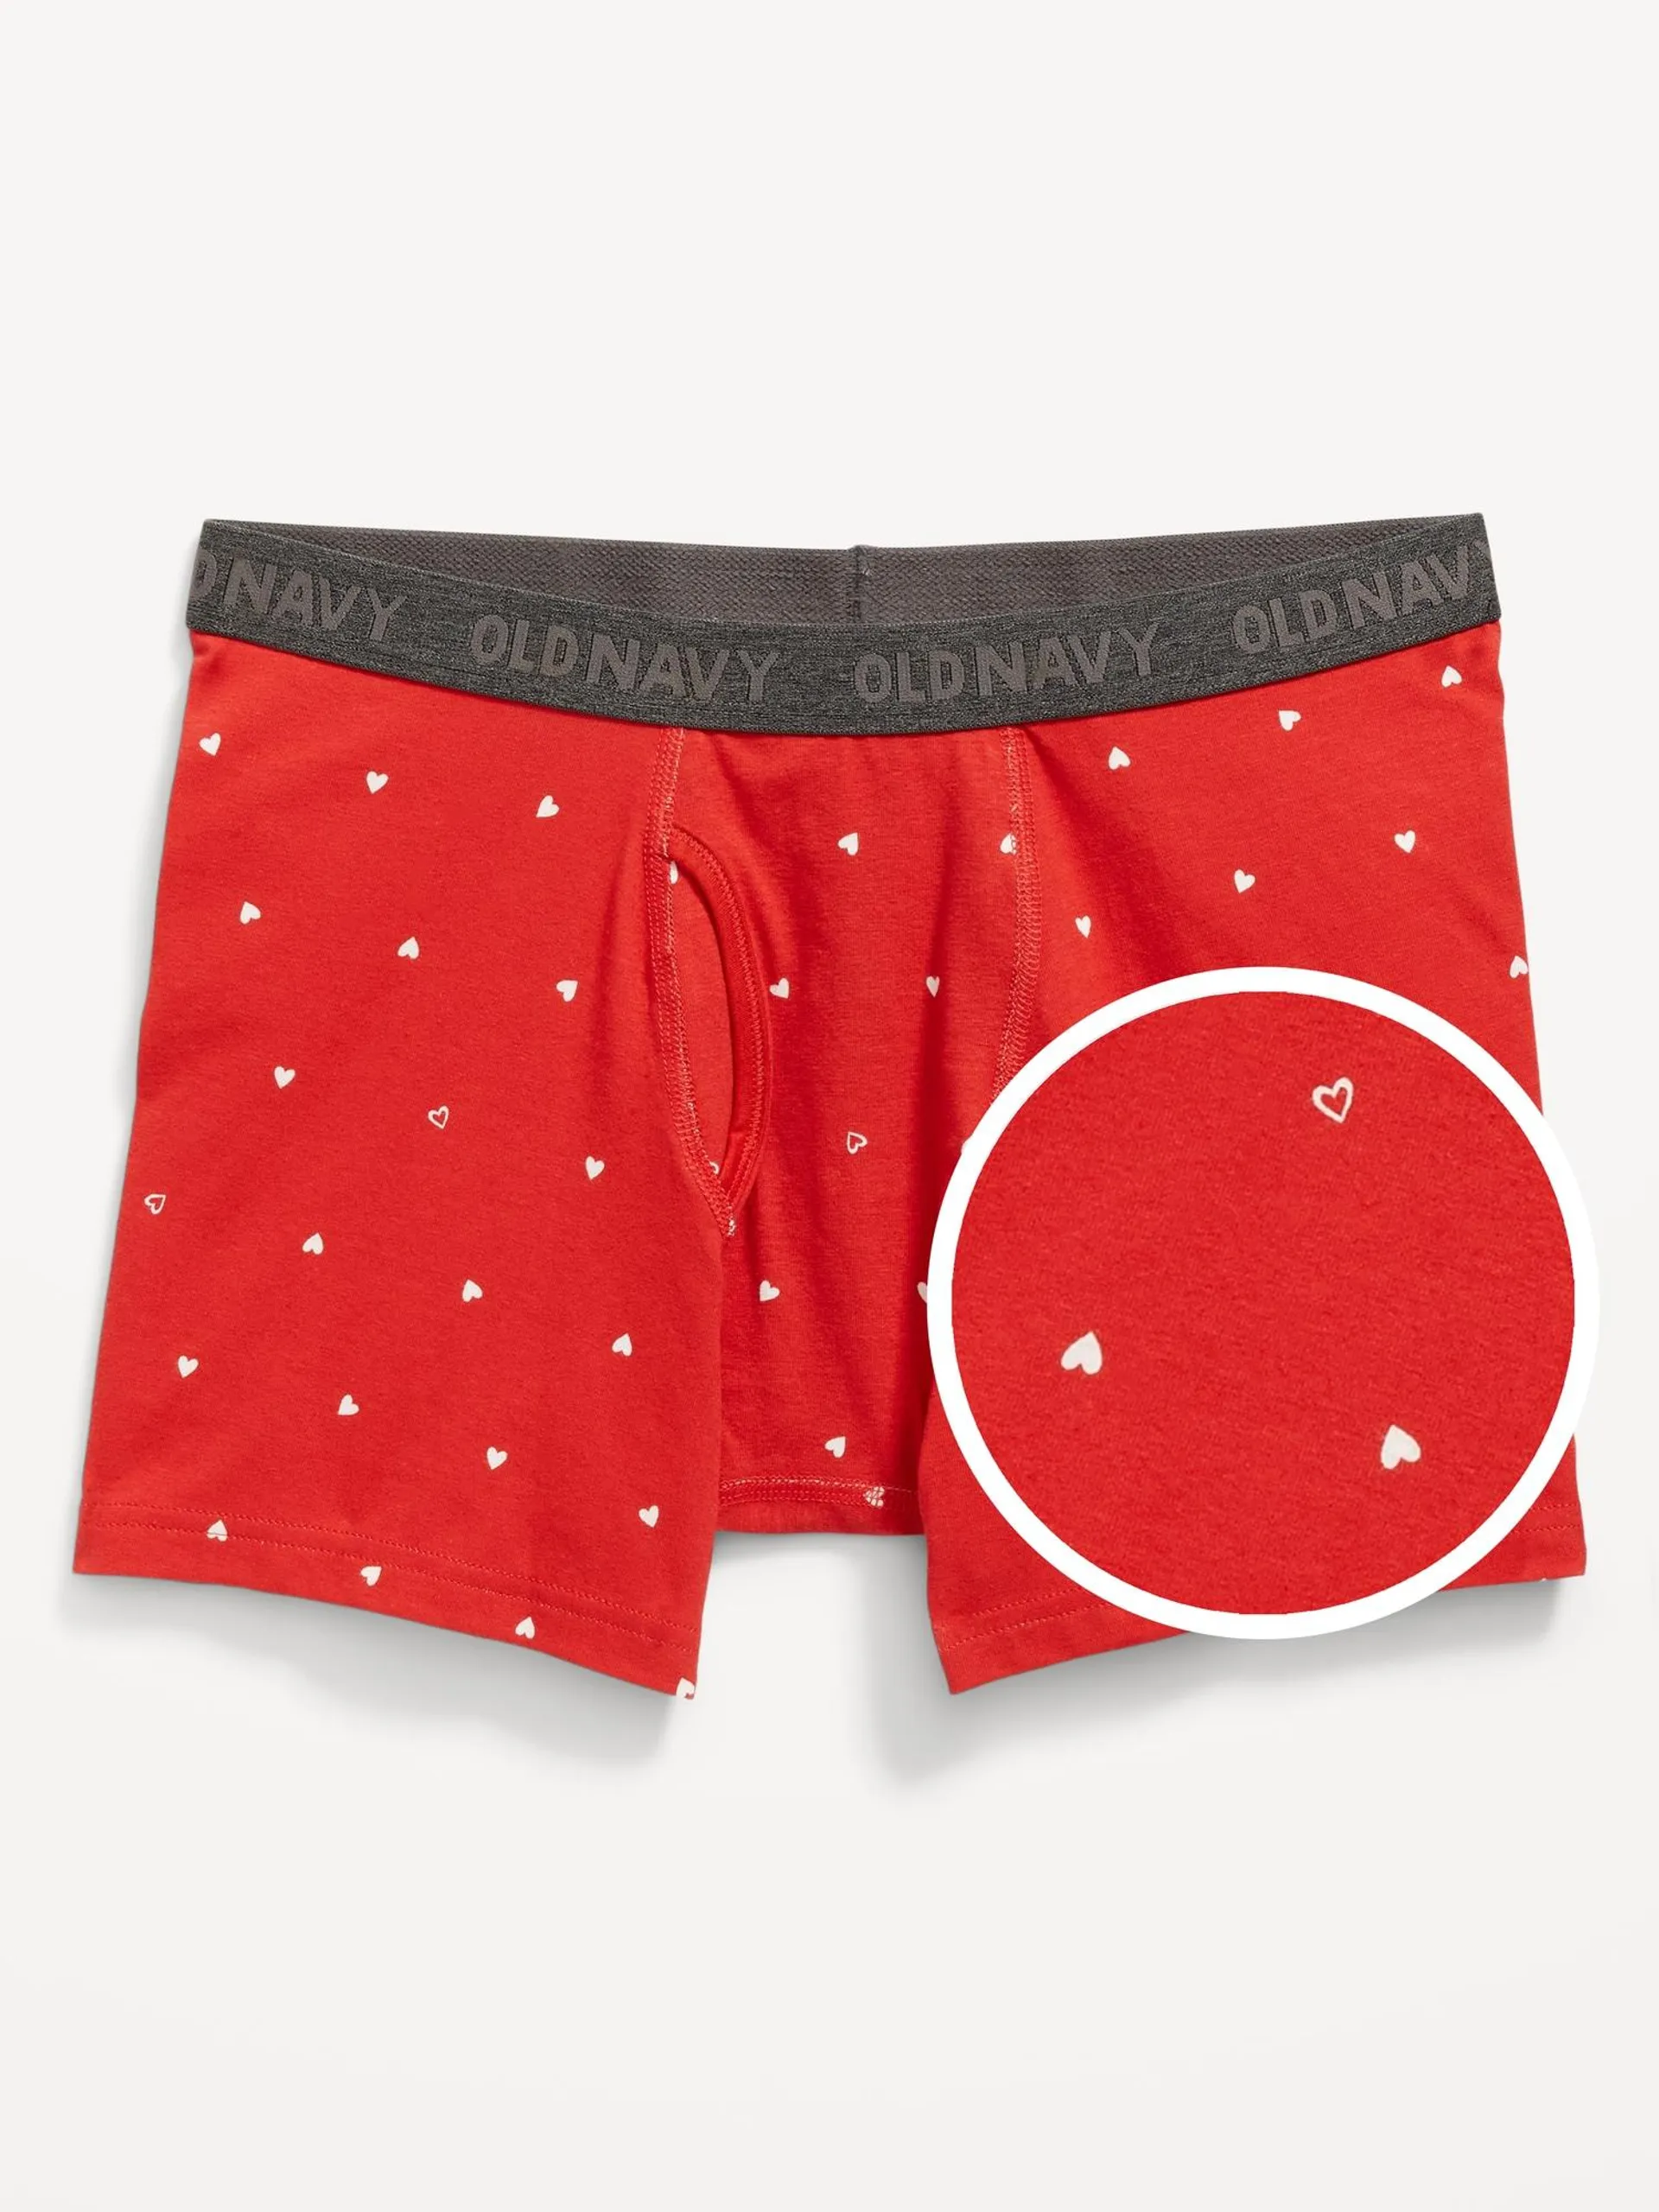 Soft-Washed Built-In Flex Printed Boxer-Briefs Underwear for Men -- 4.5-inch inseam